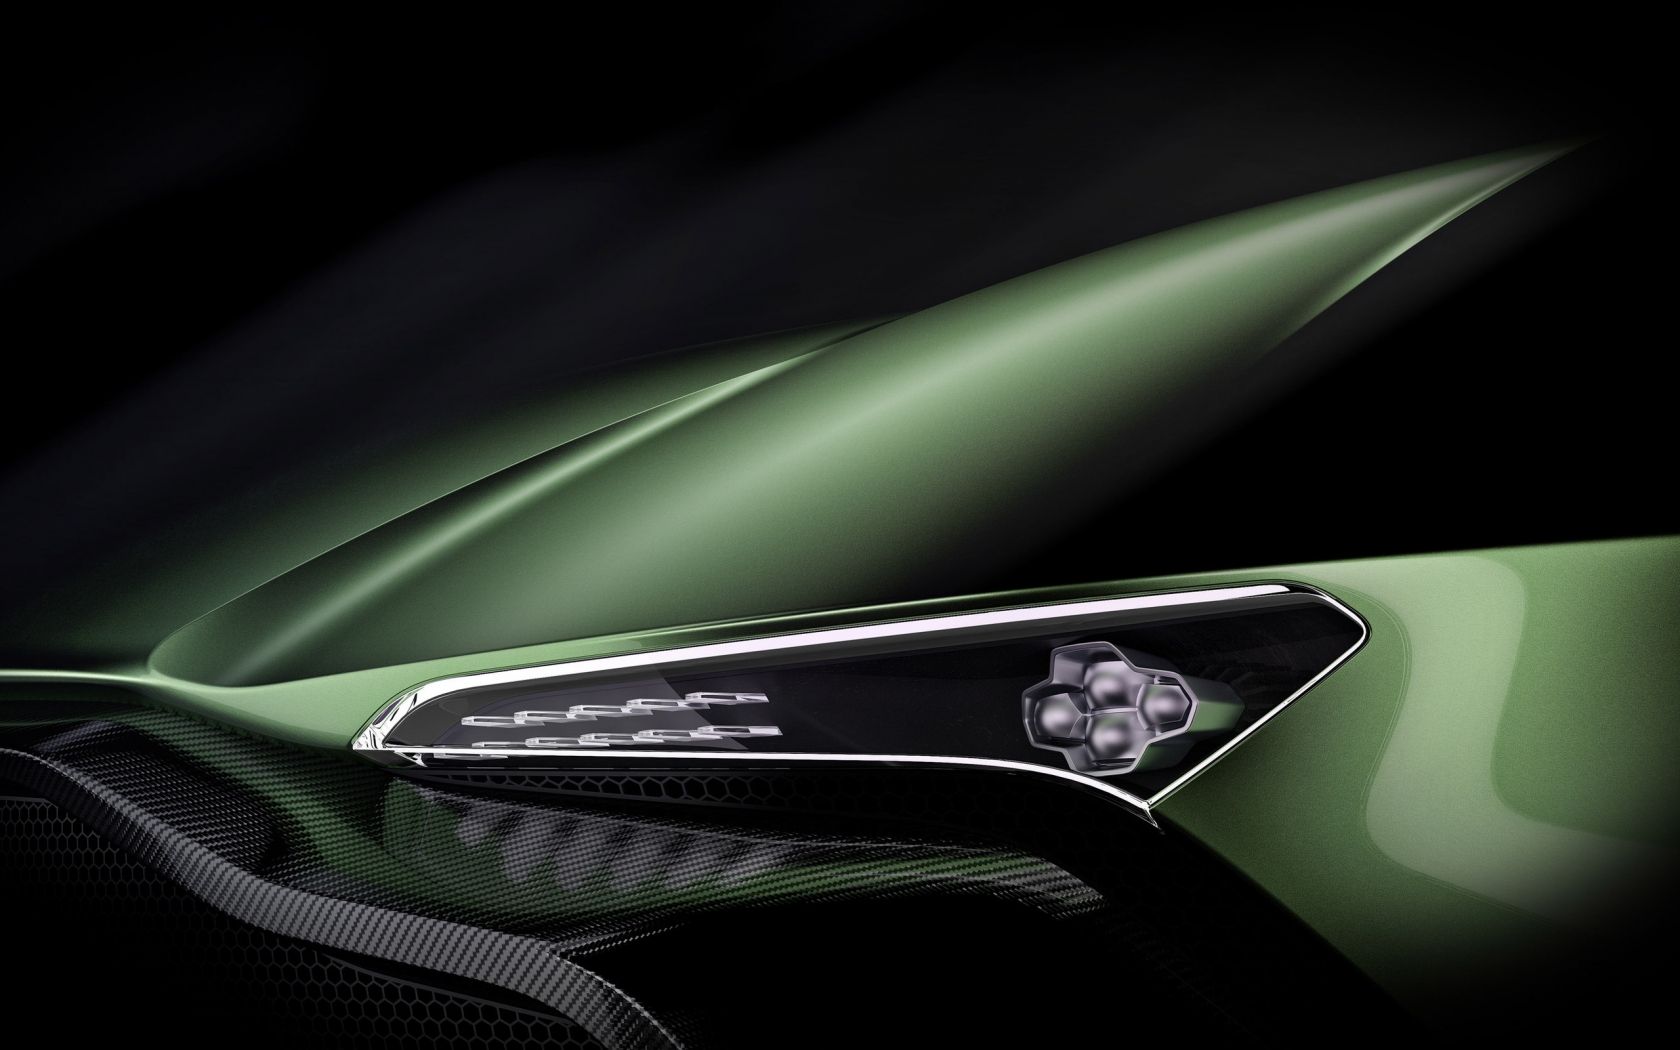 Aston Martin Vulcan Headlight for 1680 x 1050 widescreen resolution